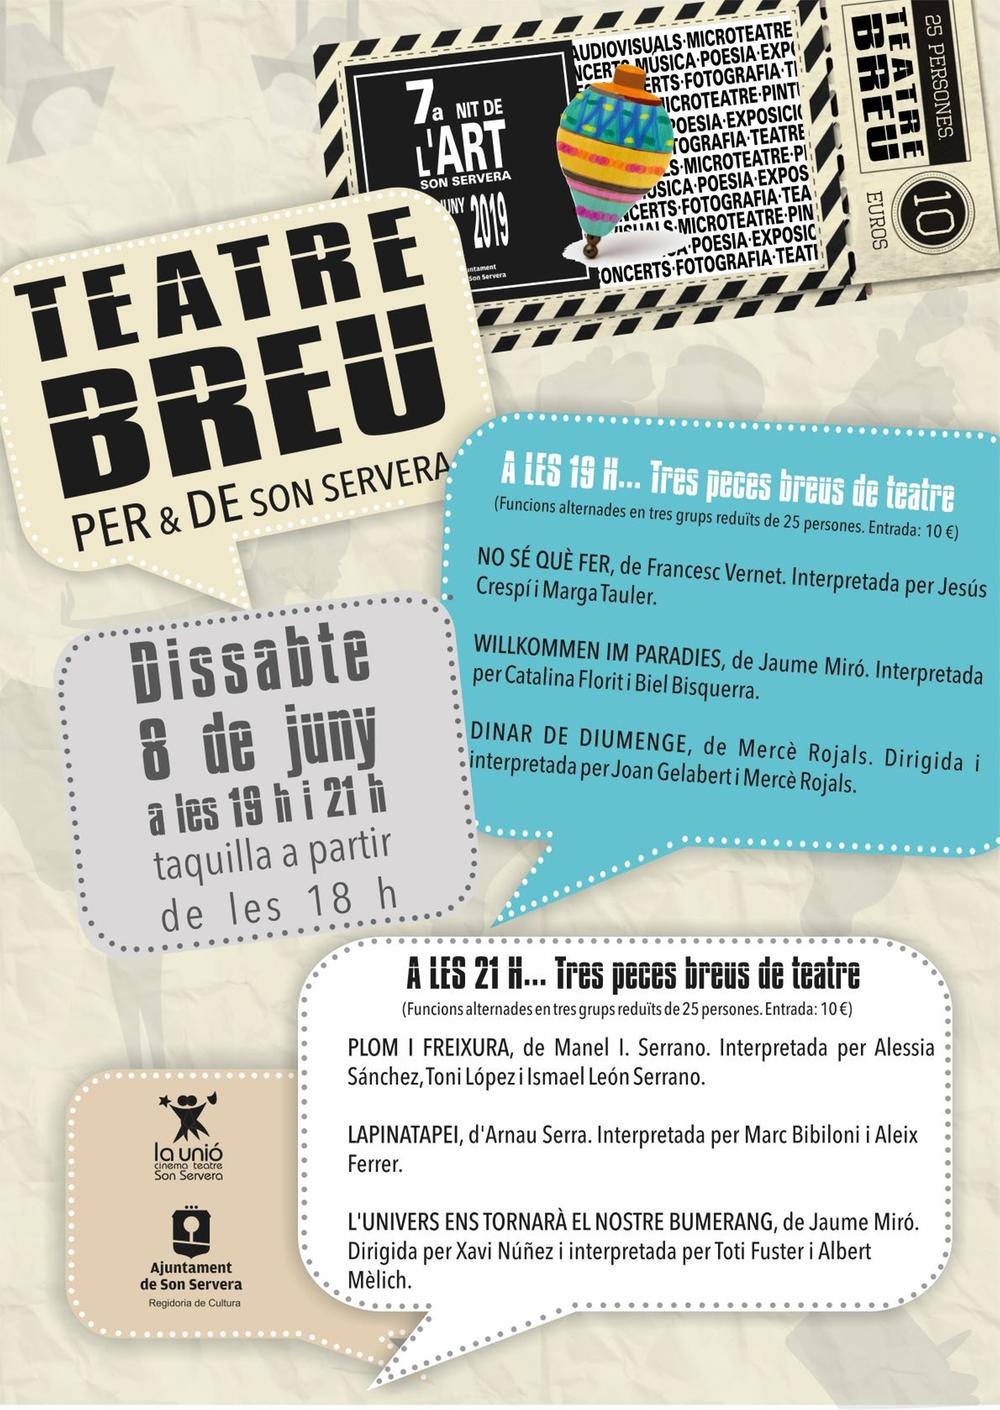 Teatre breu per & de Son Servera: Nit de l'art 2019